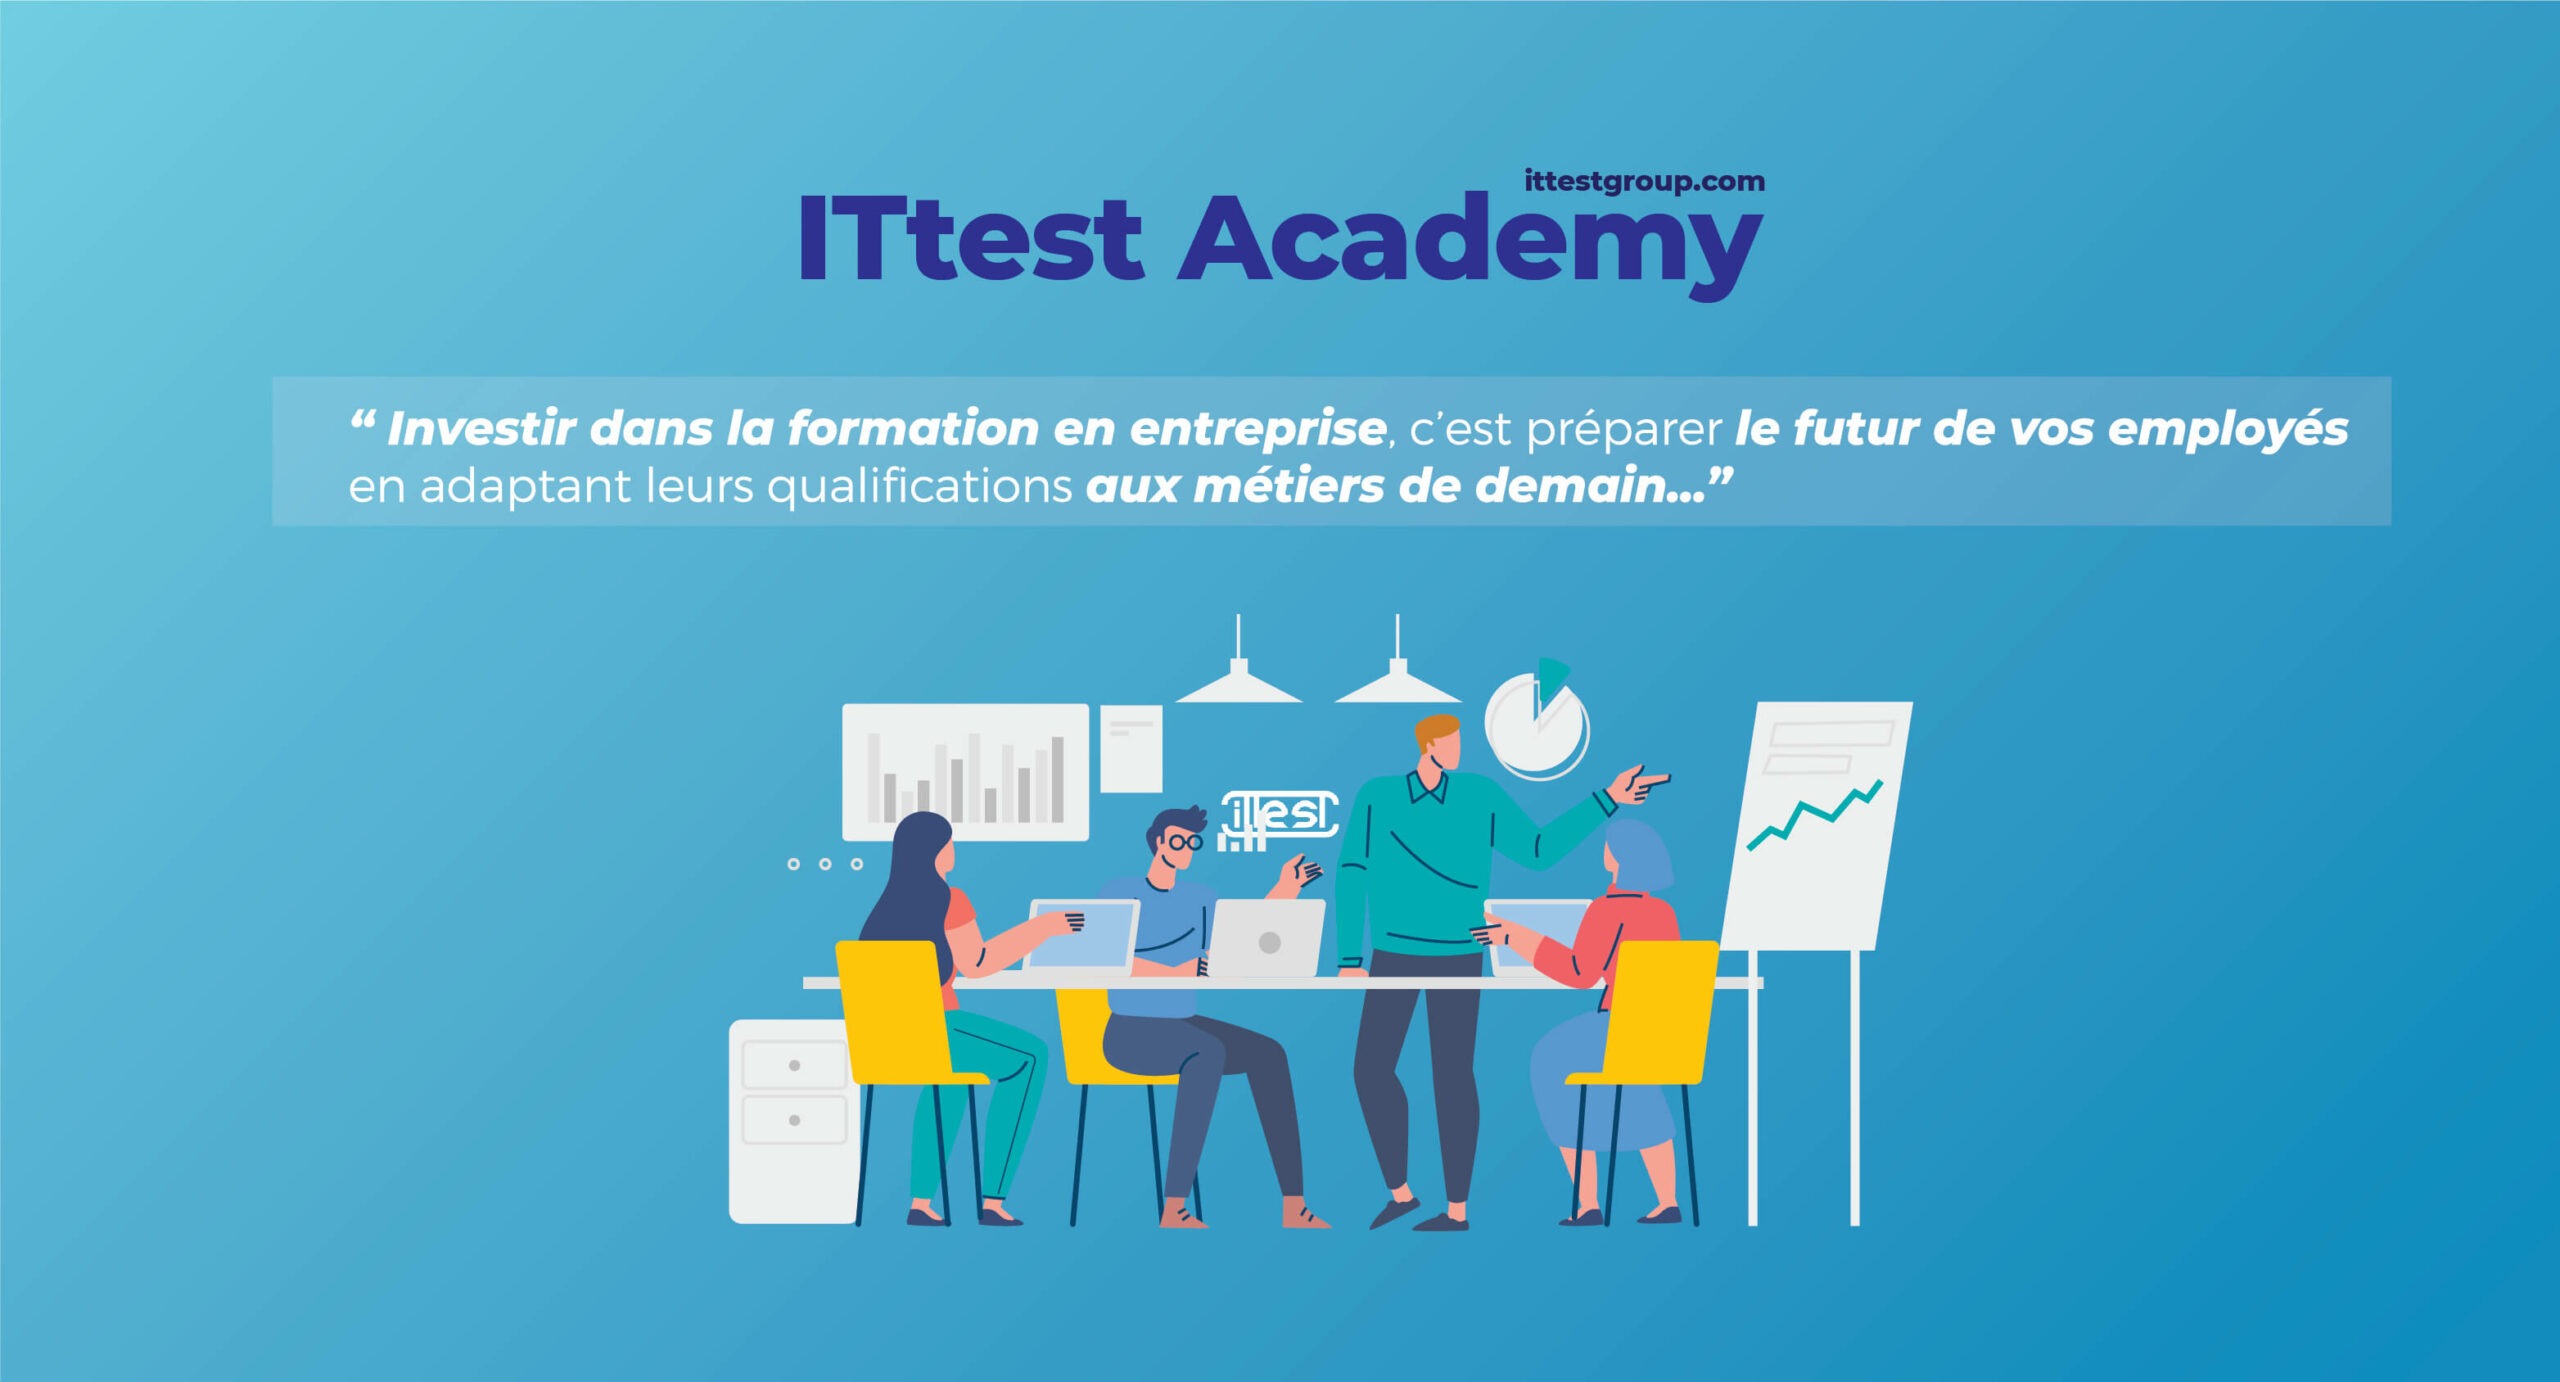 La Formation En Entreprise : ITtest Academy Guide